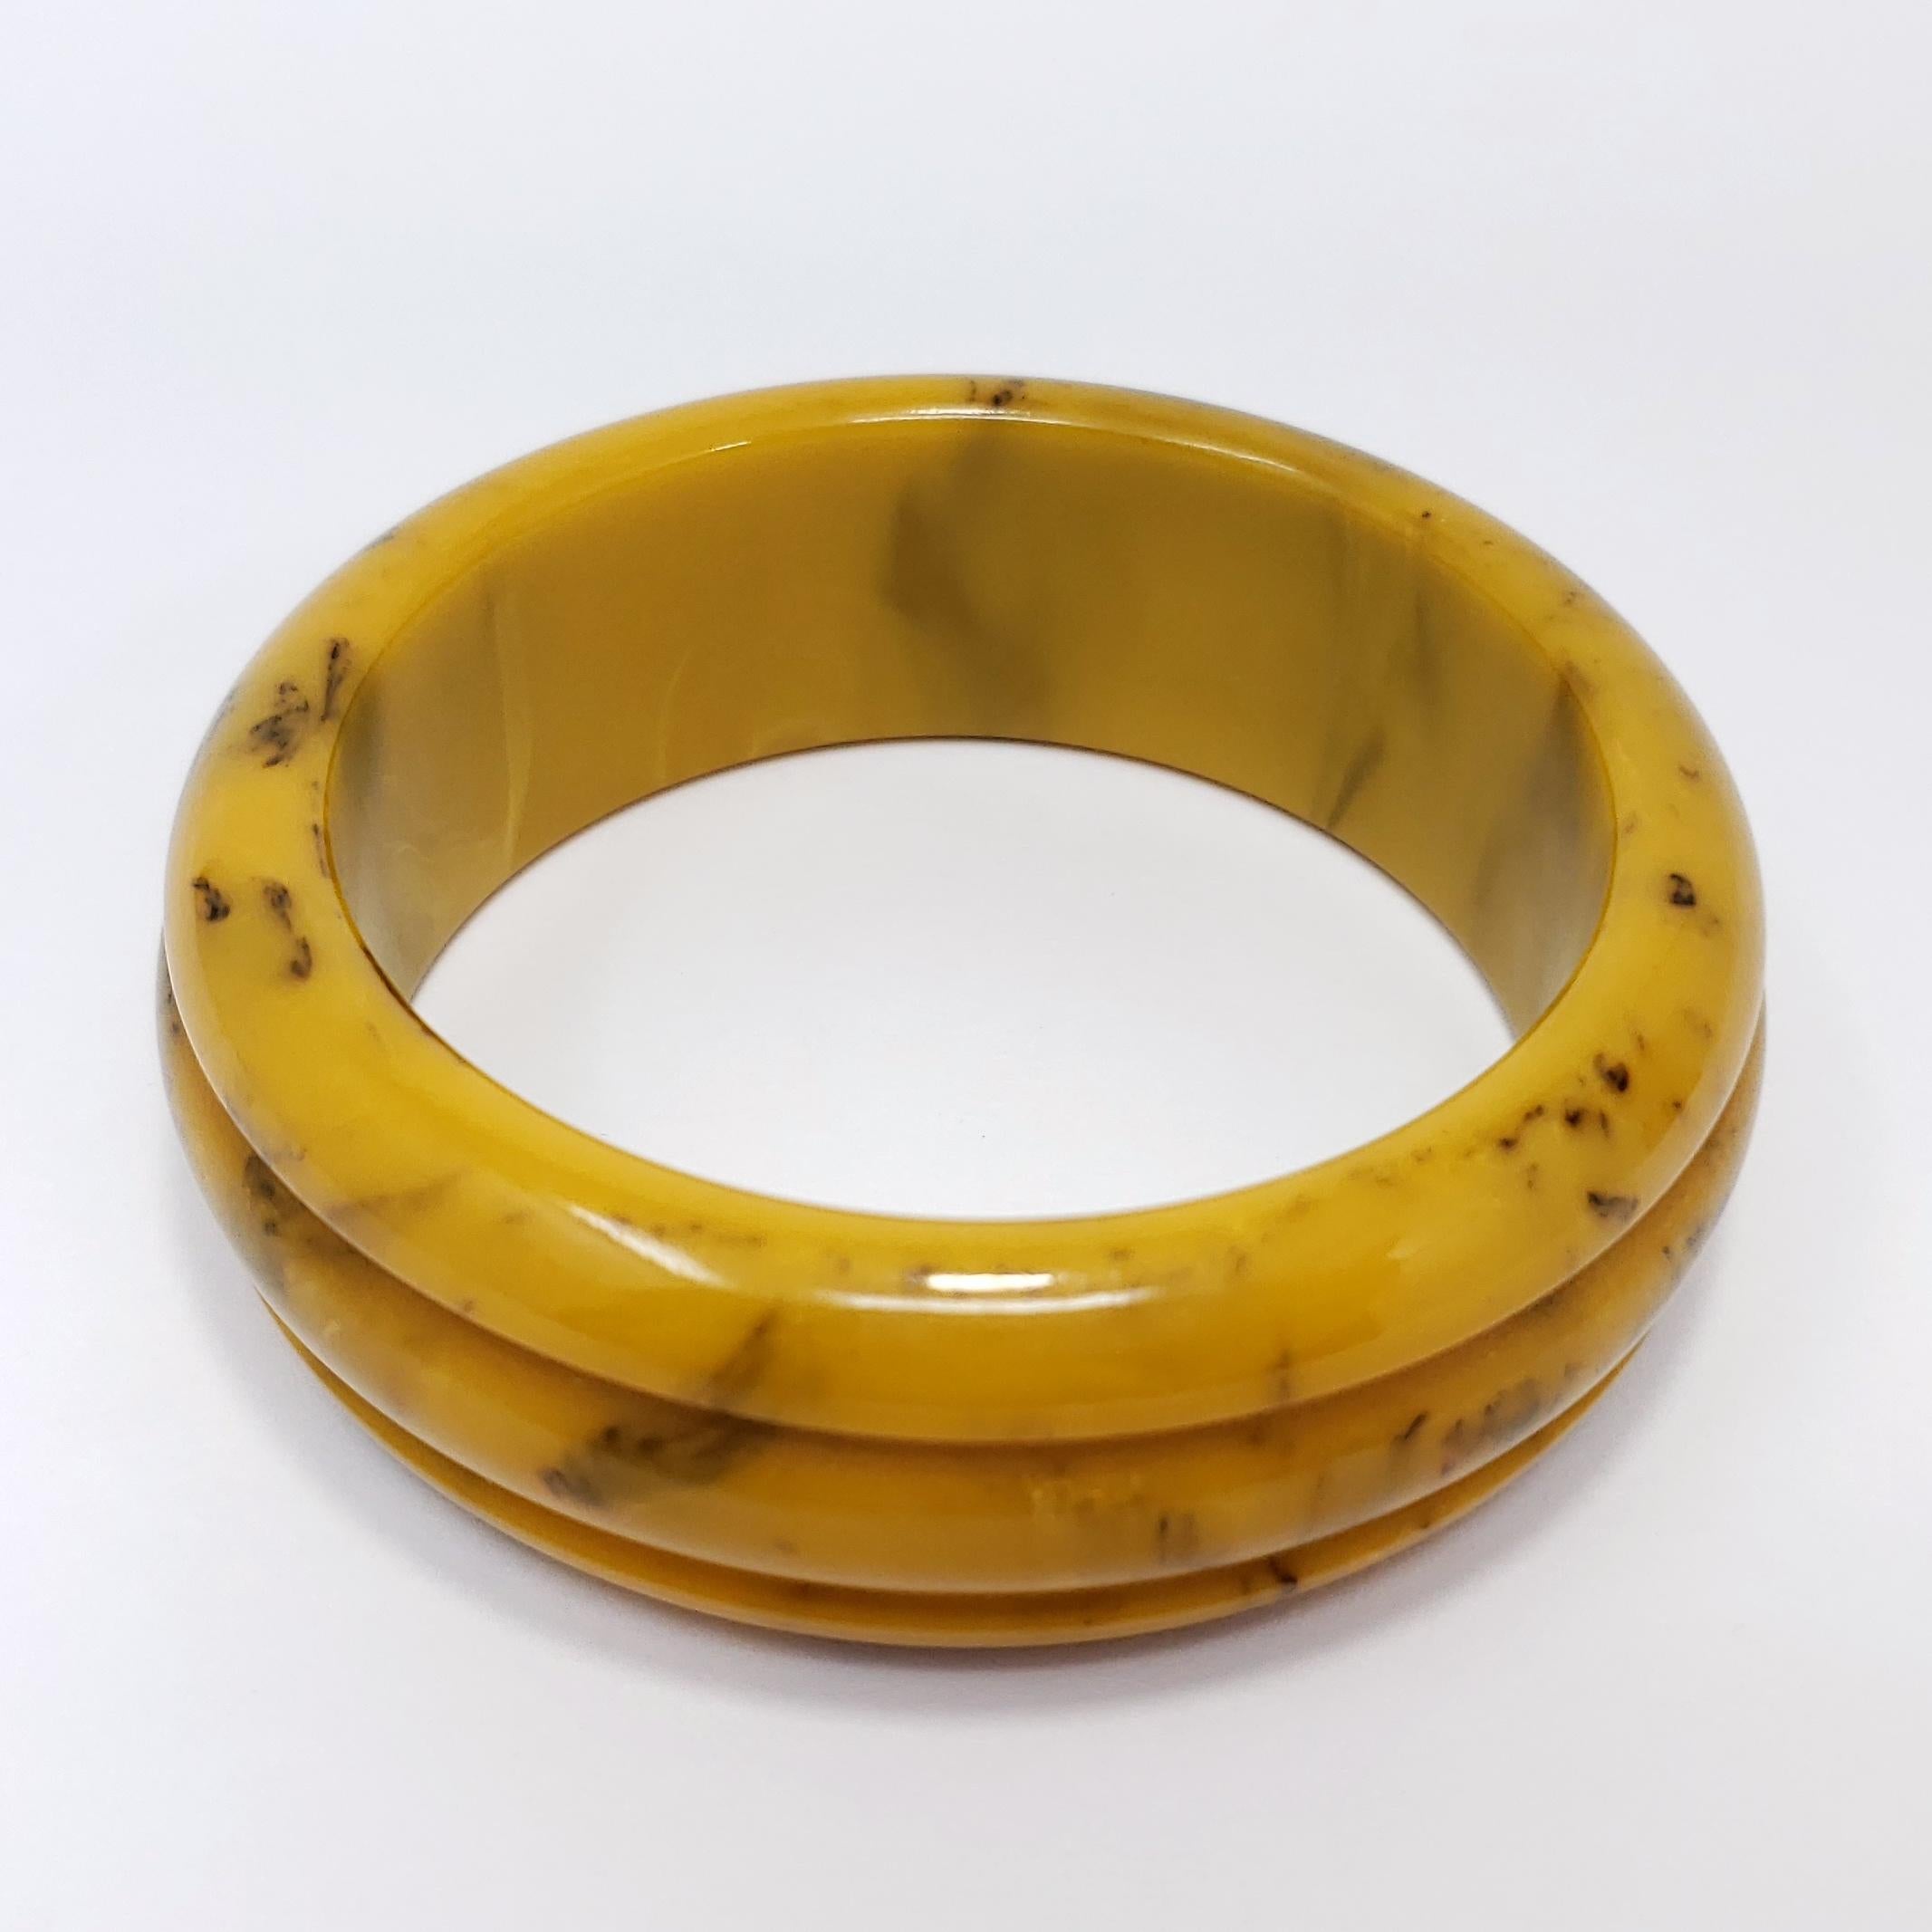 Un gros bracelet vintage en bakélite ! Bracelet sculpté dans des couleurs marbrées jaune caramel. 

Hauteur : 2,5 cm
Diamètre intérieur : 6,4 cm
